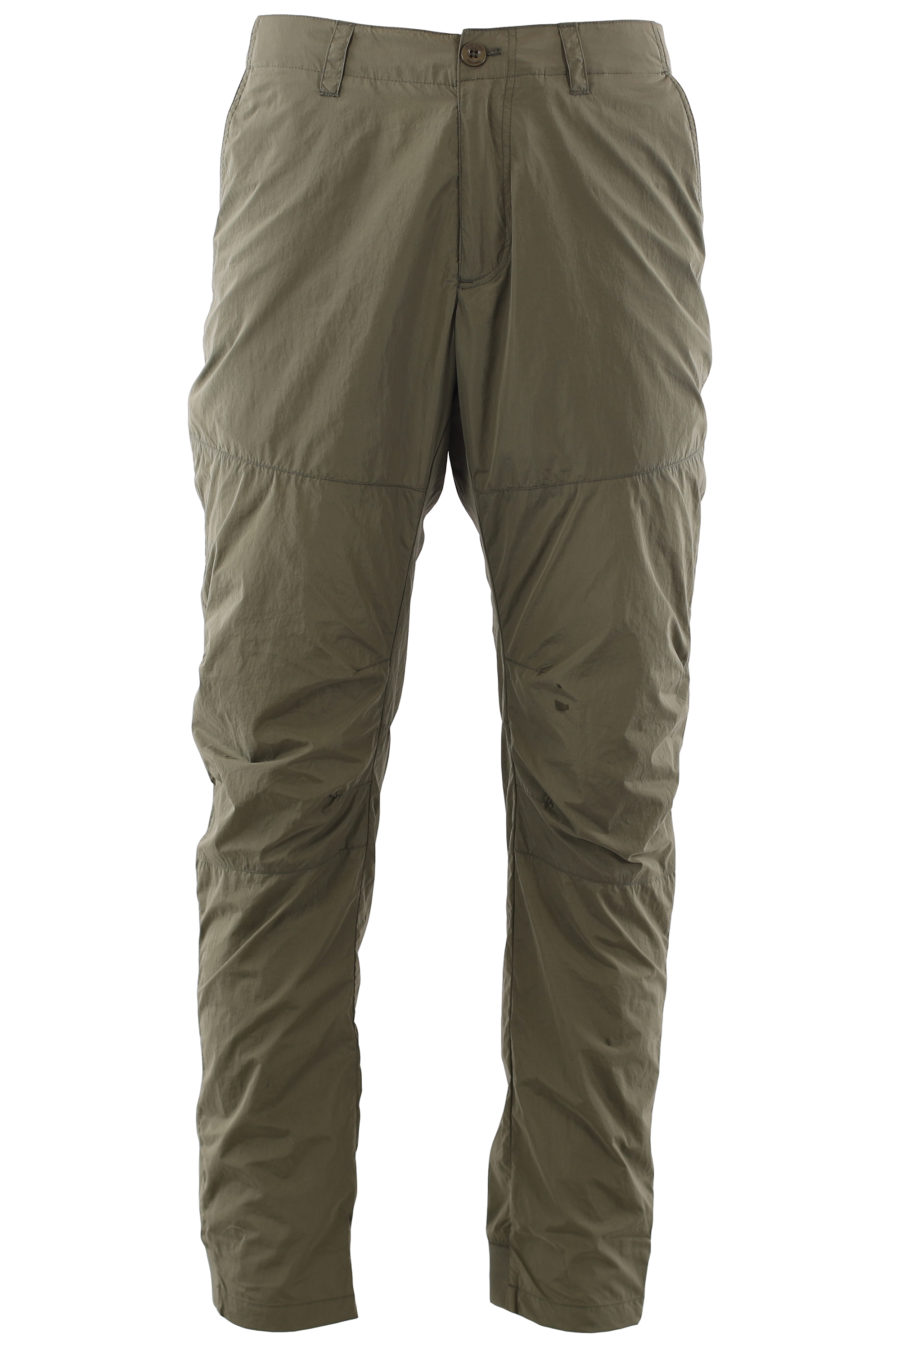 Pantalon long "tactique" vert militaire - IMG 6662